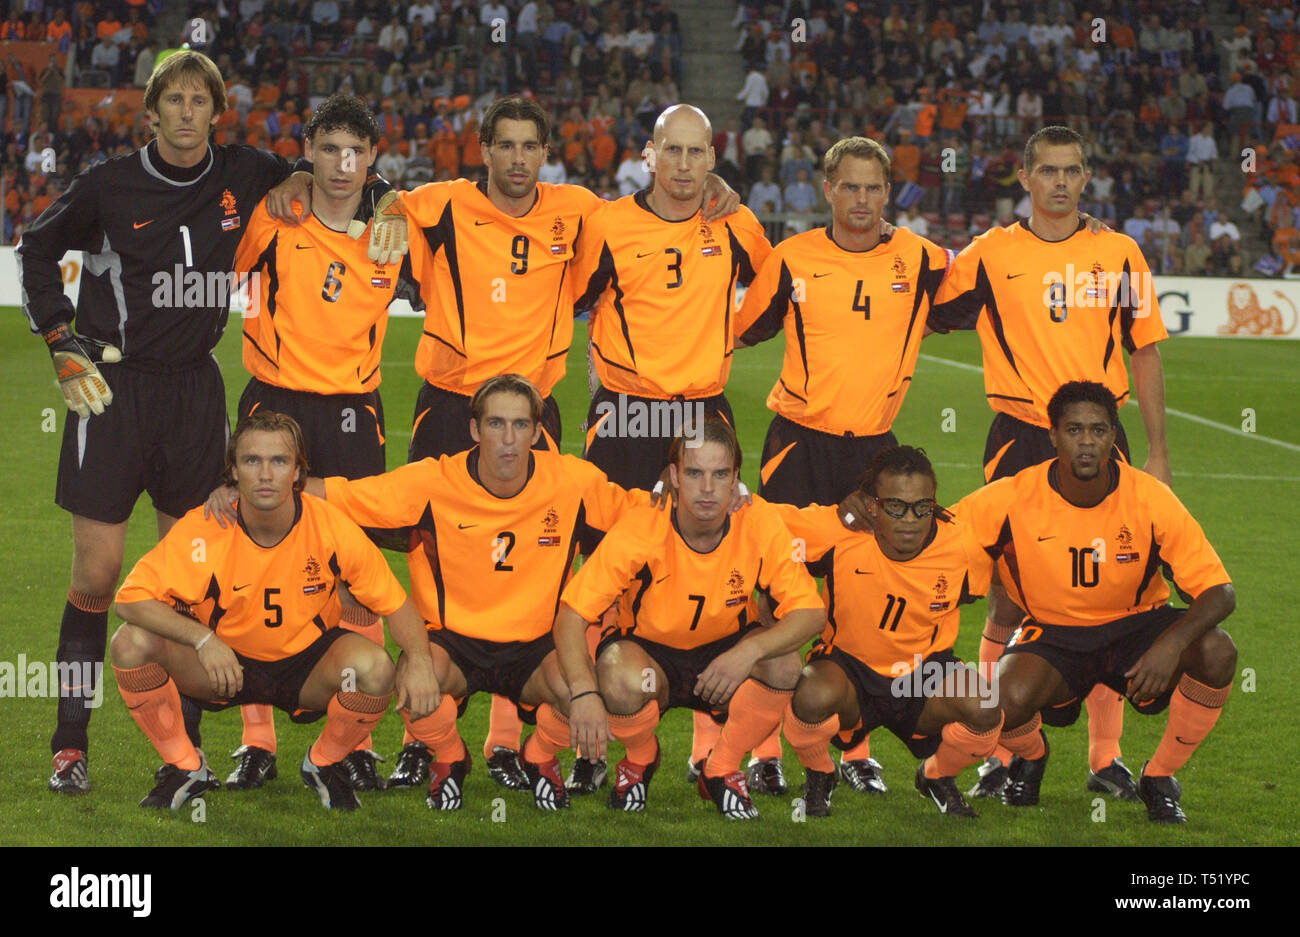 Philips Stadium Eindhoven, Netherlands 7.9..2002, football: European Championships qualifier, Netherlands (orange) vs Belarus (white) 3:0 --- team photo Netherlands, back row from left: EDWIN VAN DER SAR,MARK VON BOMMMEL, RUUD VAN NISTELROOY, JAAP STAM, FRANK DE BOER, PHILLIP COCU front row from left: BOUDEWIJN ZENDEN, FERNANDO RICKSEN, ANDY VAN DER MEYDE, EDGAR DAVIDS, PATRICK KLUIVERT Stock Photo